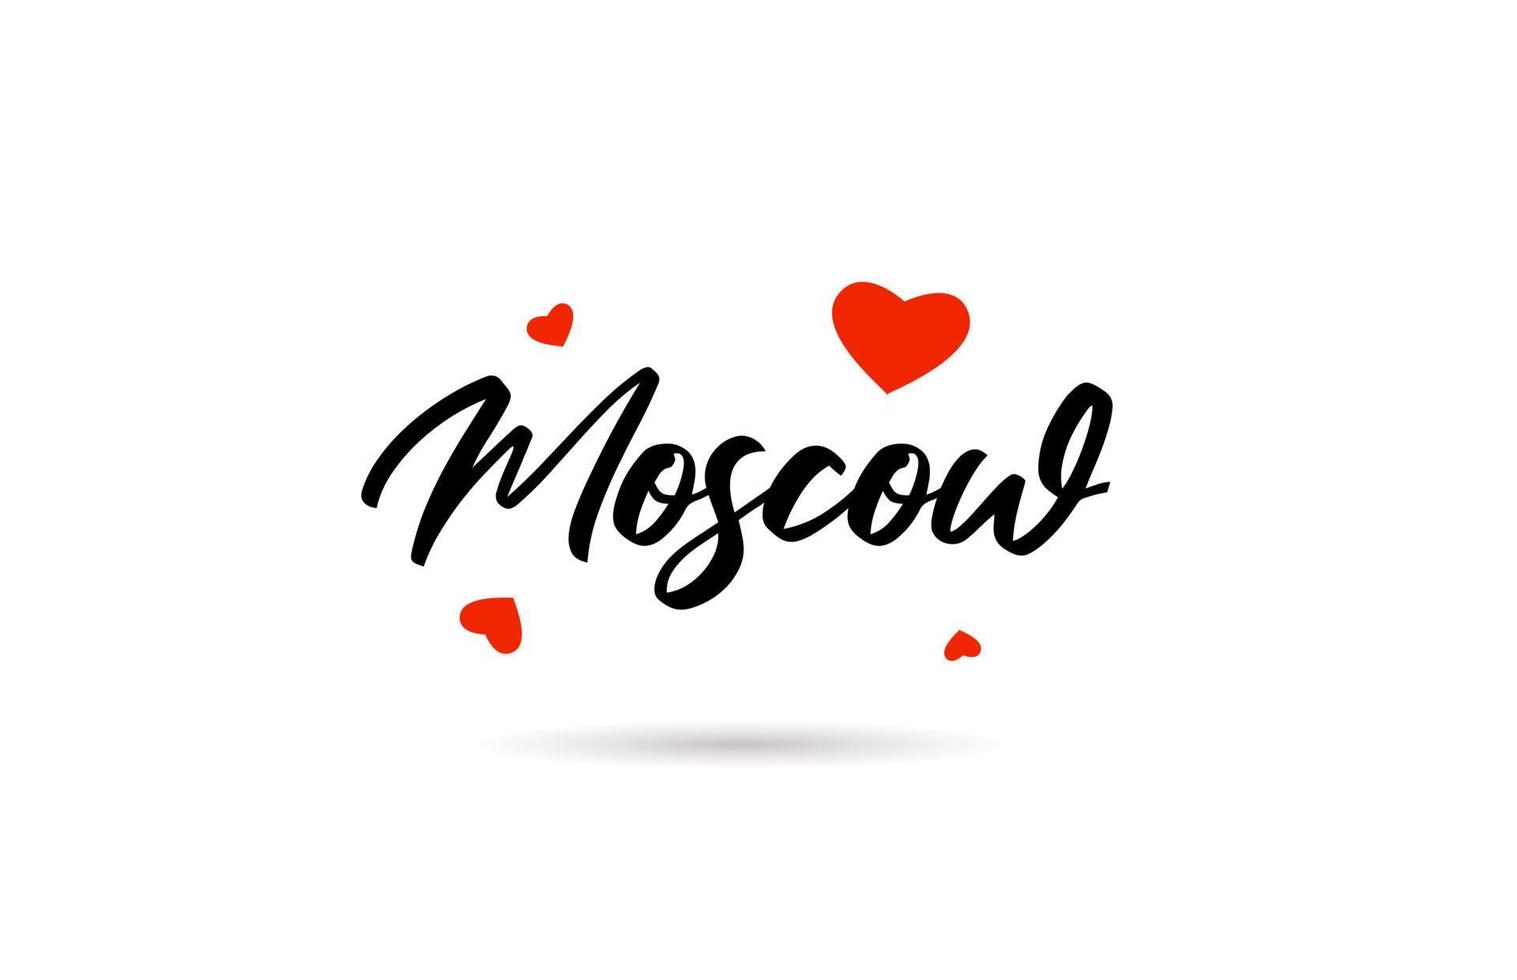 Moskou handgeschreven stad typografie tekst met liefde hart vector